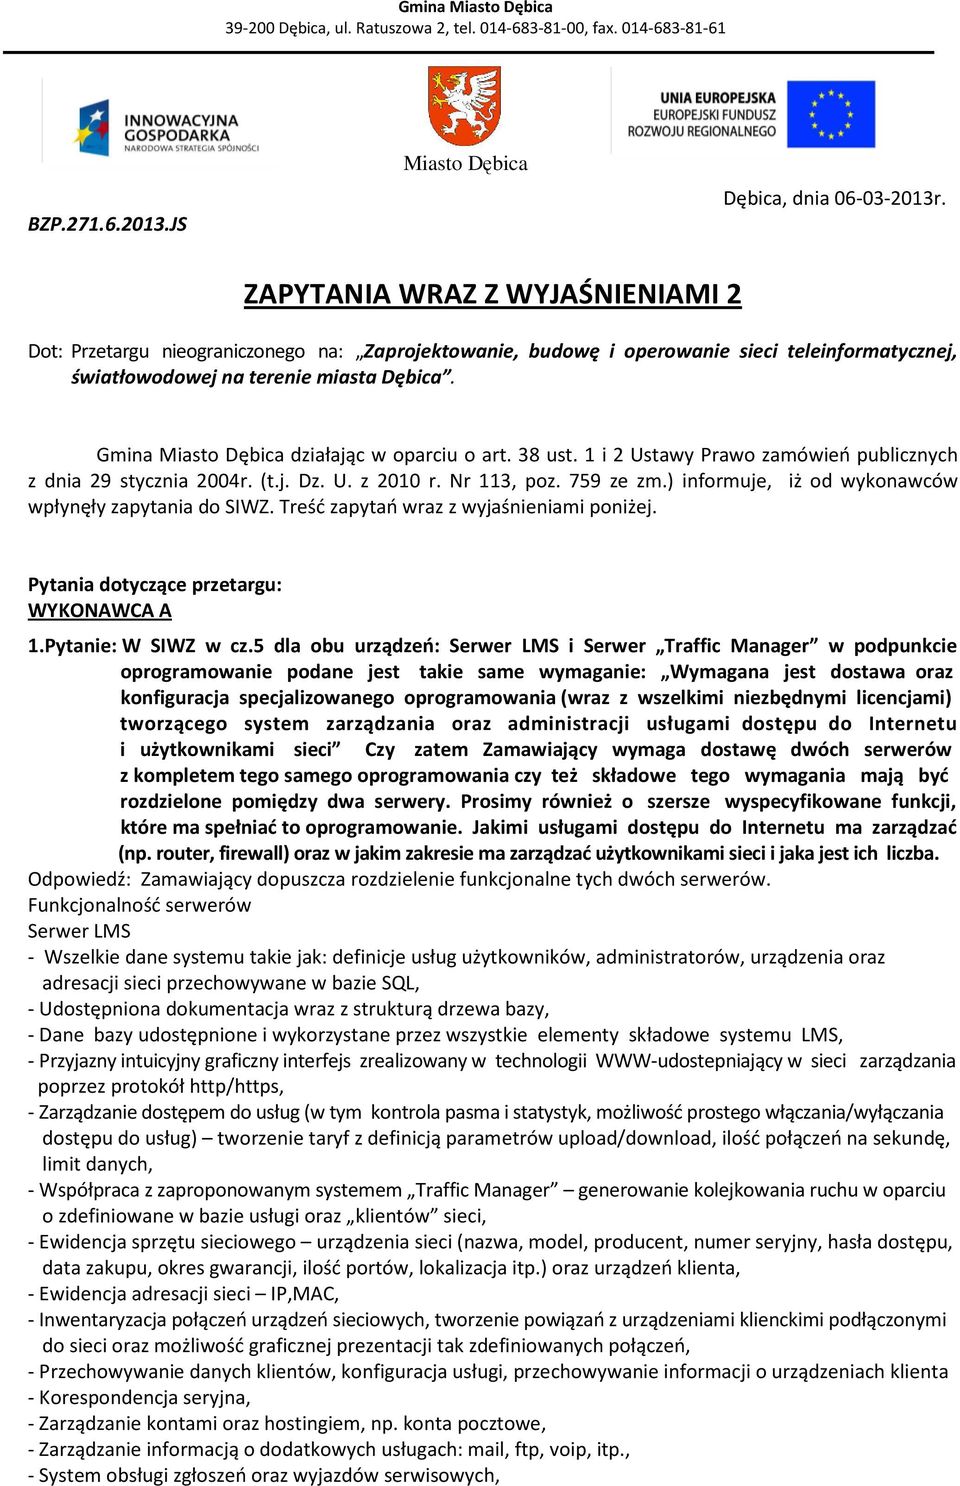 Gmina Miasto Dębica działając w oparciu o art. 38 ust. 1 i 2 Ustawy Prawo zamówień publicznych z dnia 29 stycznia 2004r. (t.j. Dz. U. z 2010 r. Nr 113, poz. 759 ze zm.